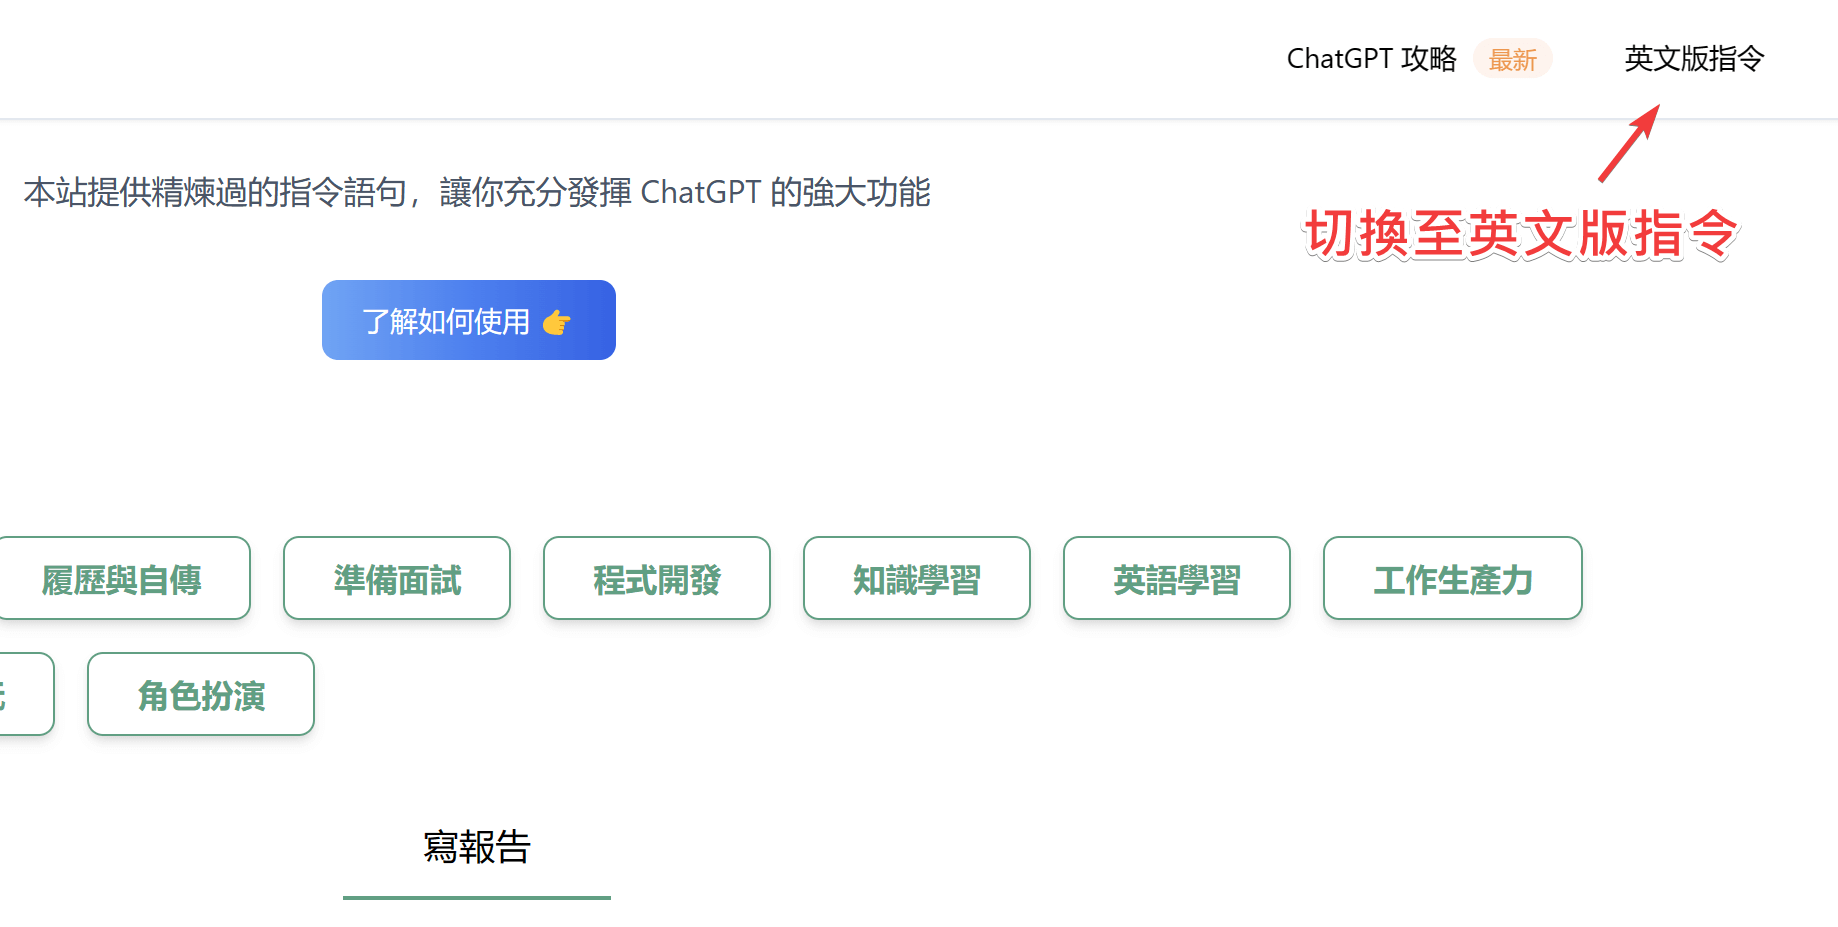 網站提供英文版與中文版指令